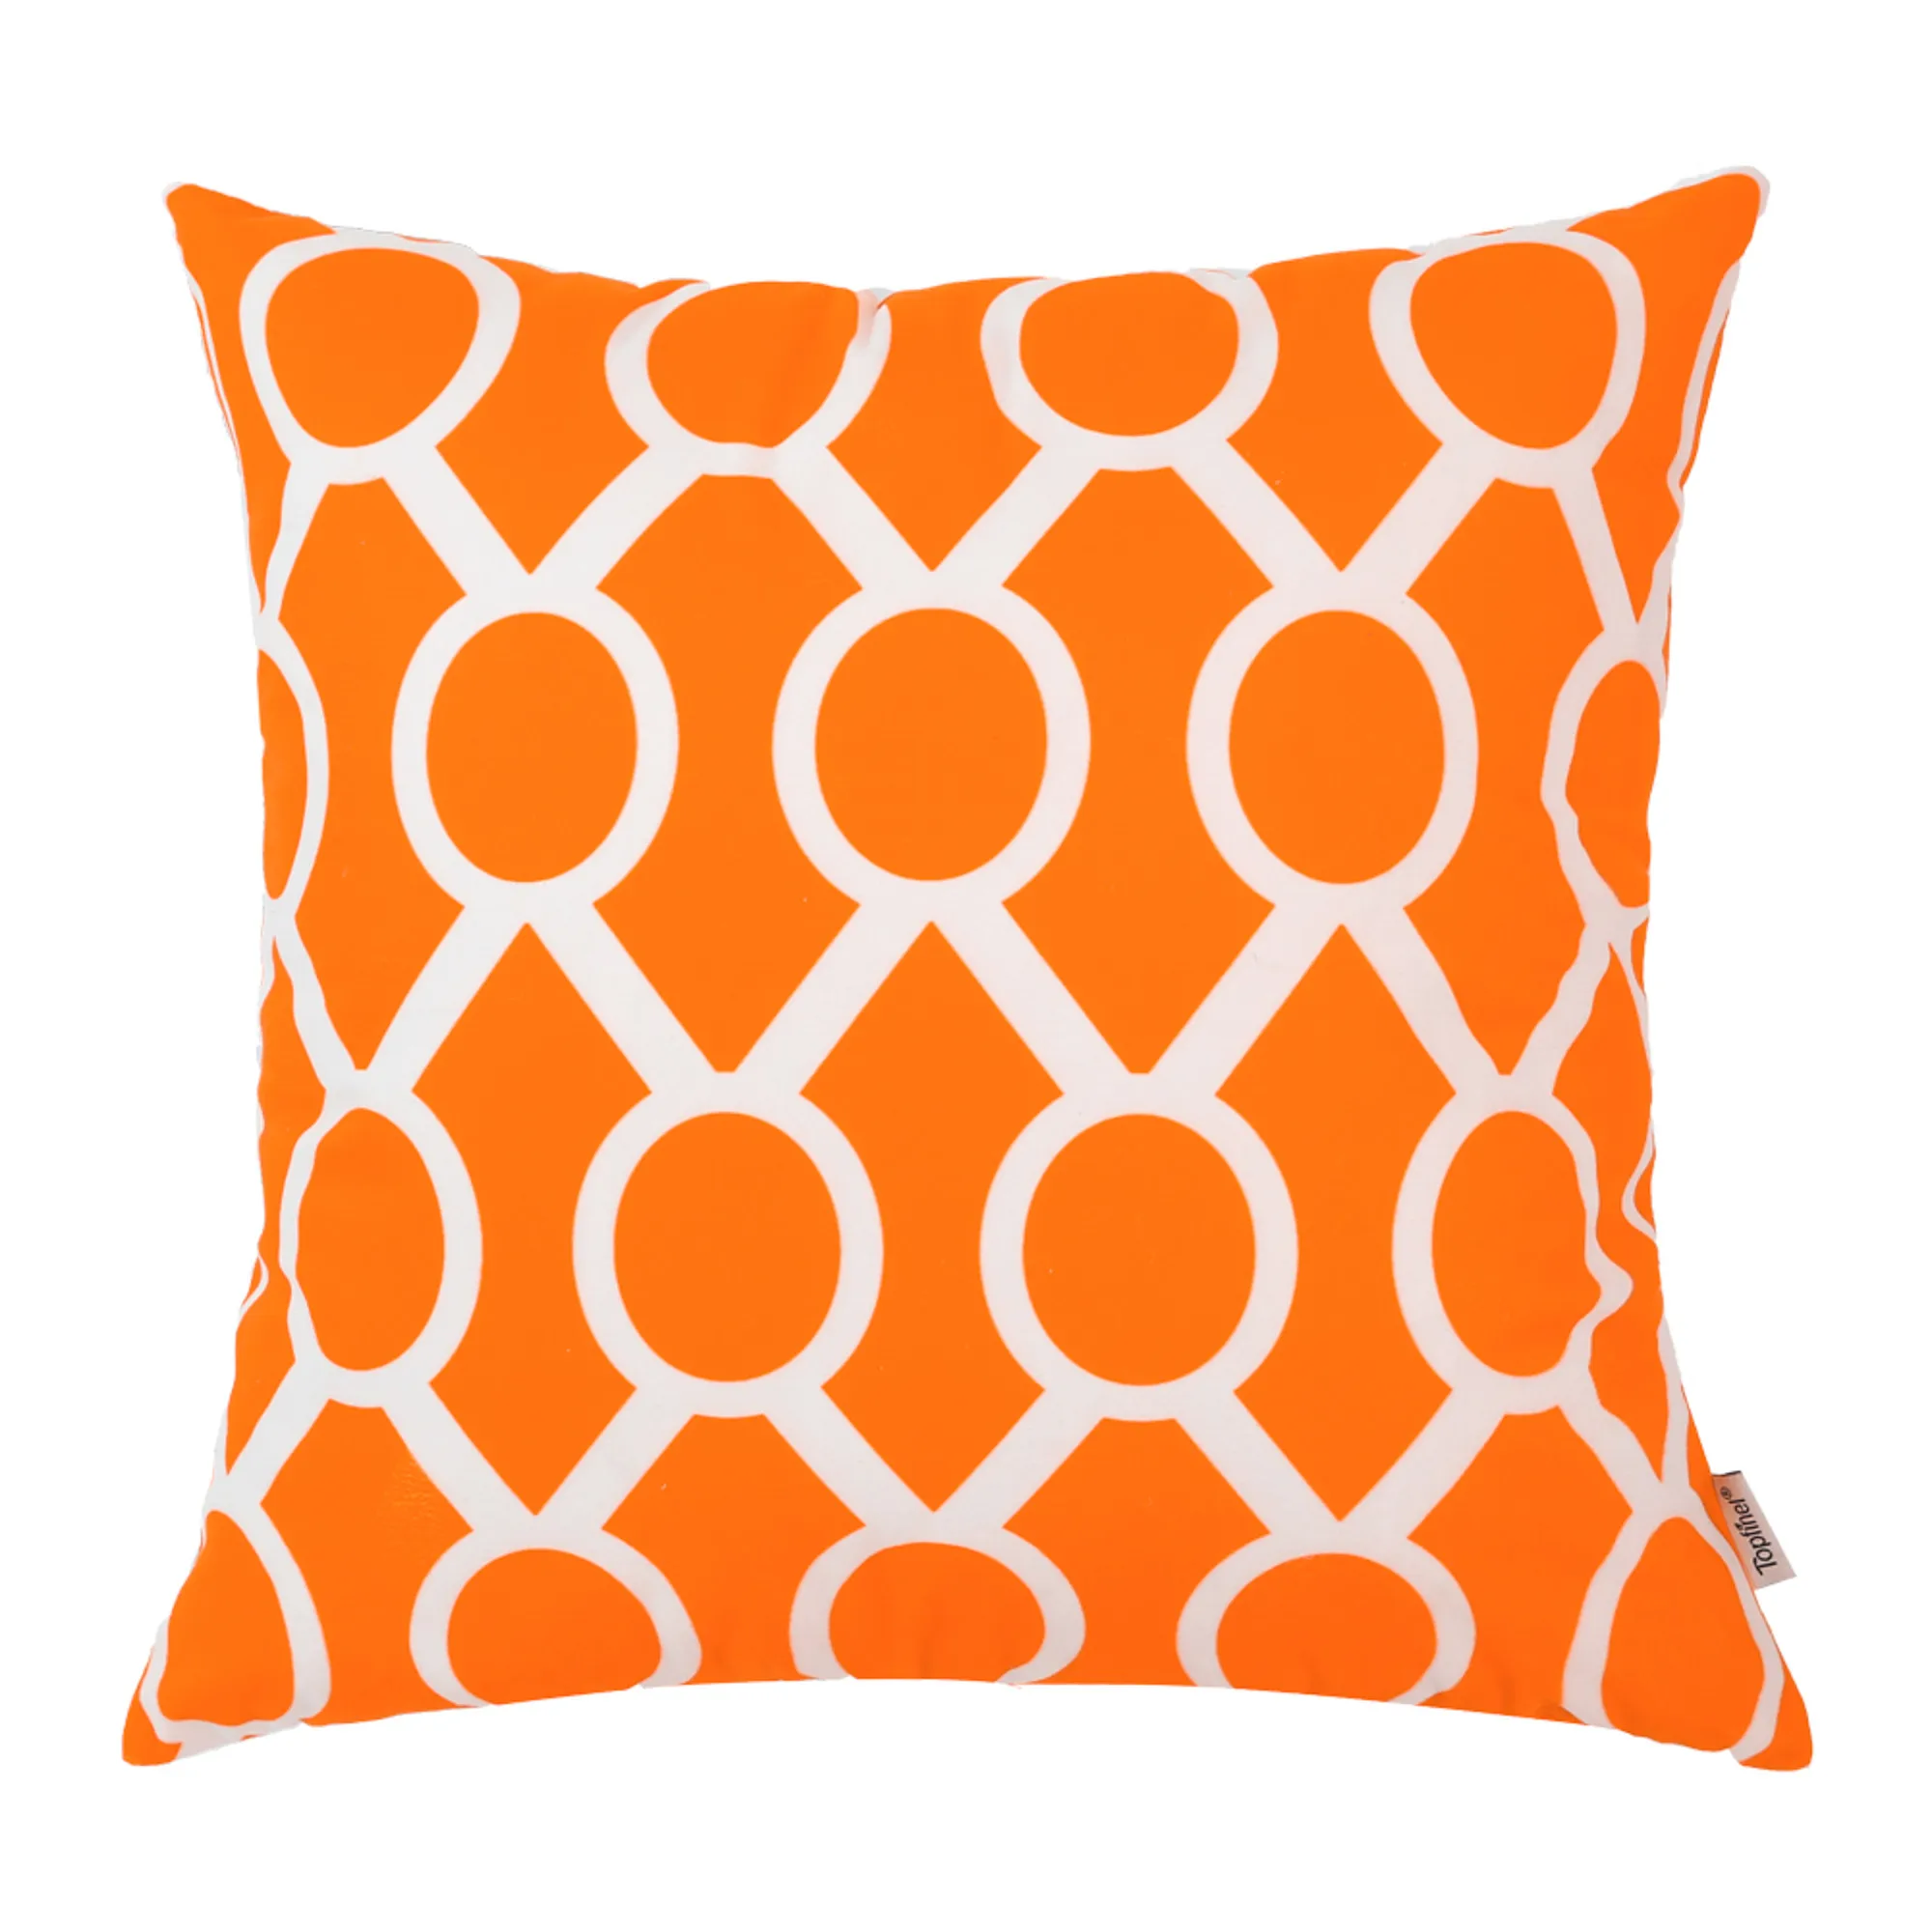 YokiSTG геометрический чехол для подушки с Северными мотивами из микрофибры наволочка для подушки Чехол для дивана кровать домашний Декор Подушка серый и желтый - Цвет: OrangeF